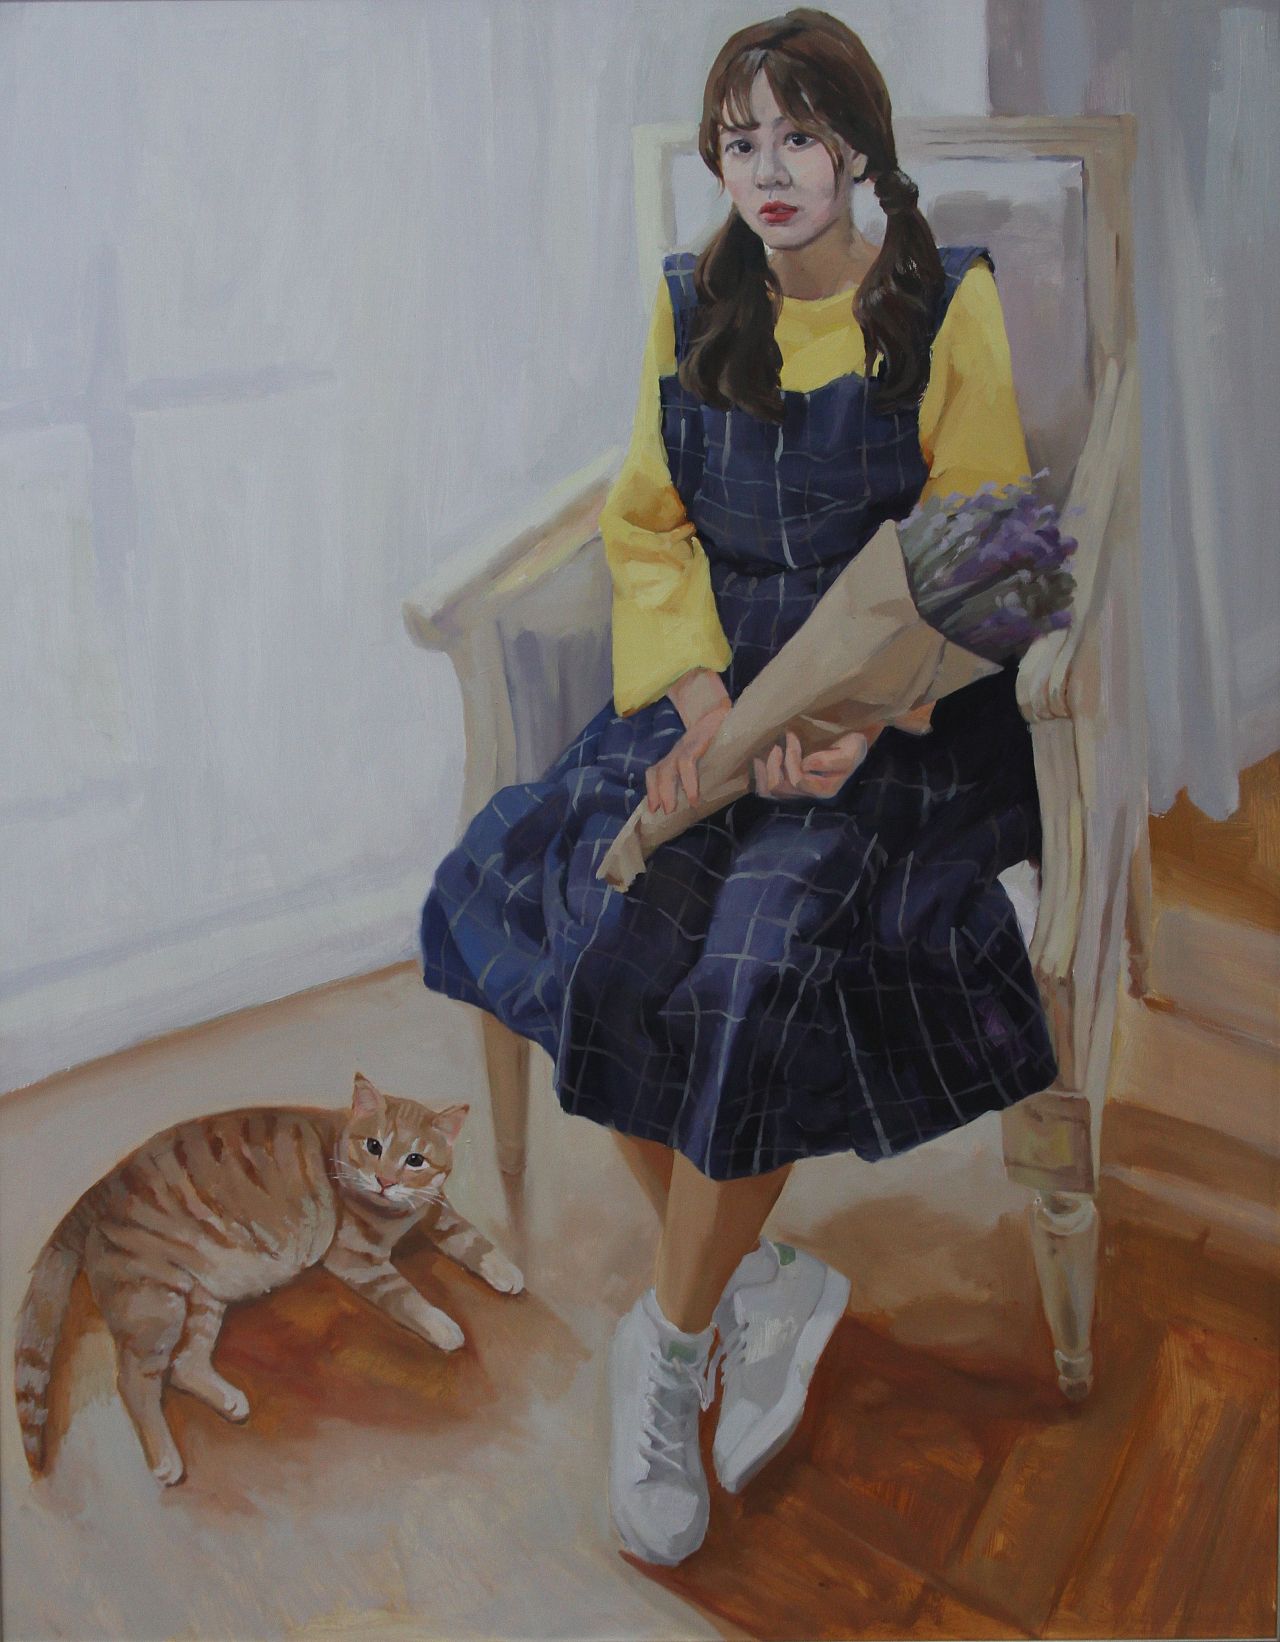 原创作品:《猫与少女》任少蕊 油画系 天津美术学院